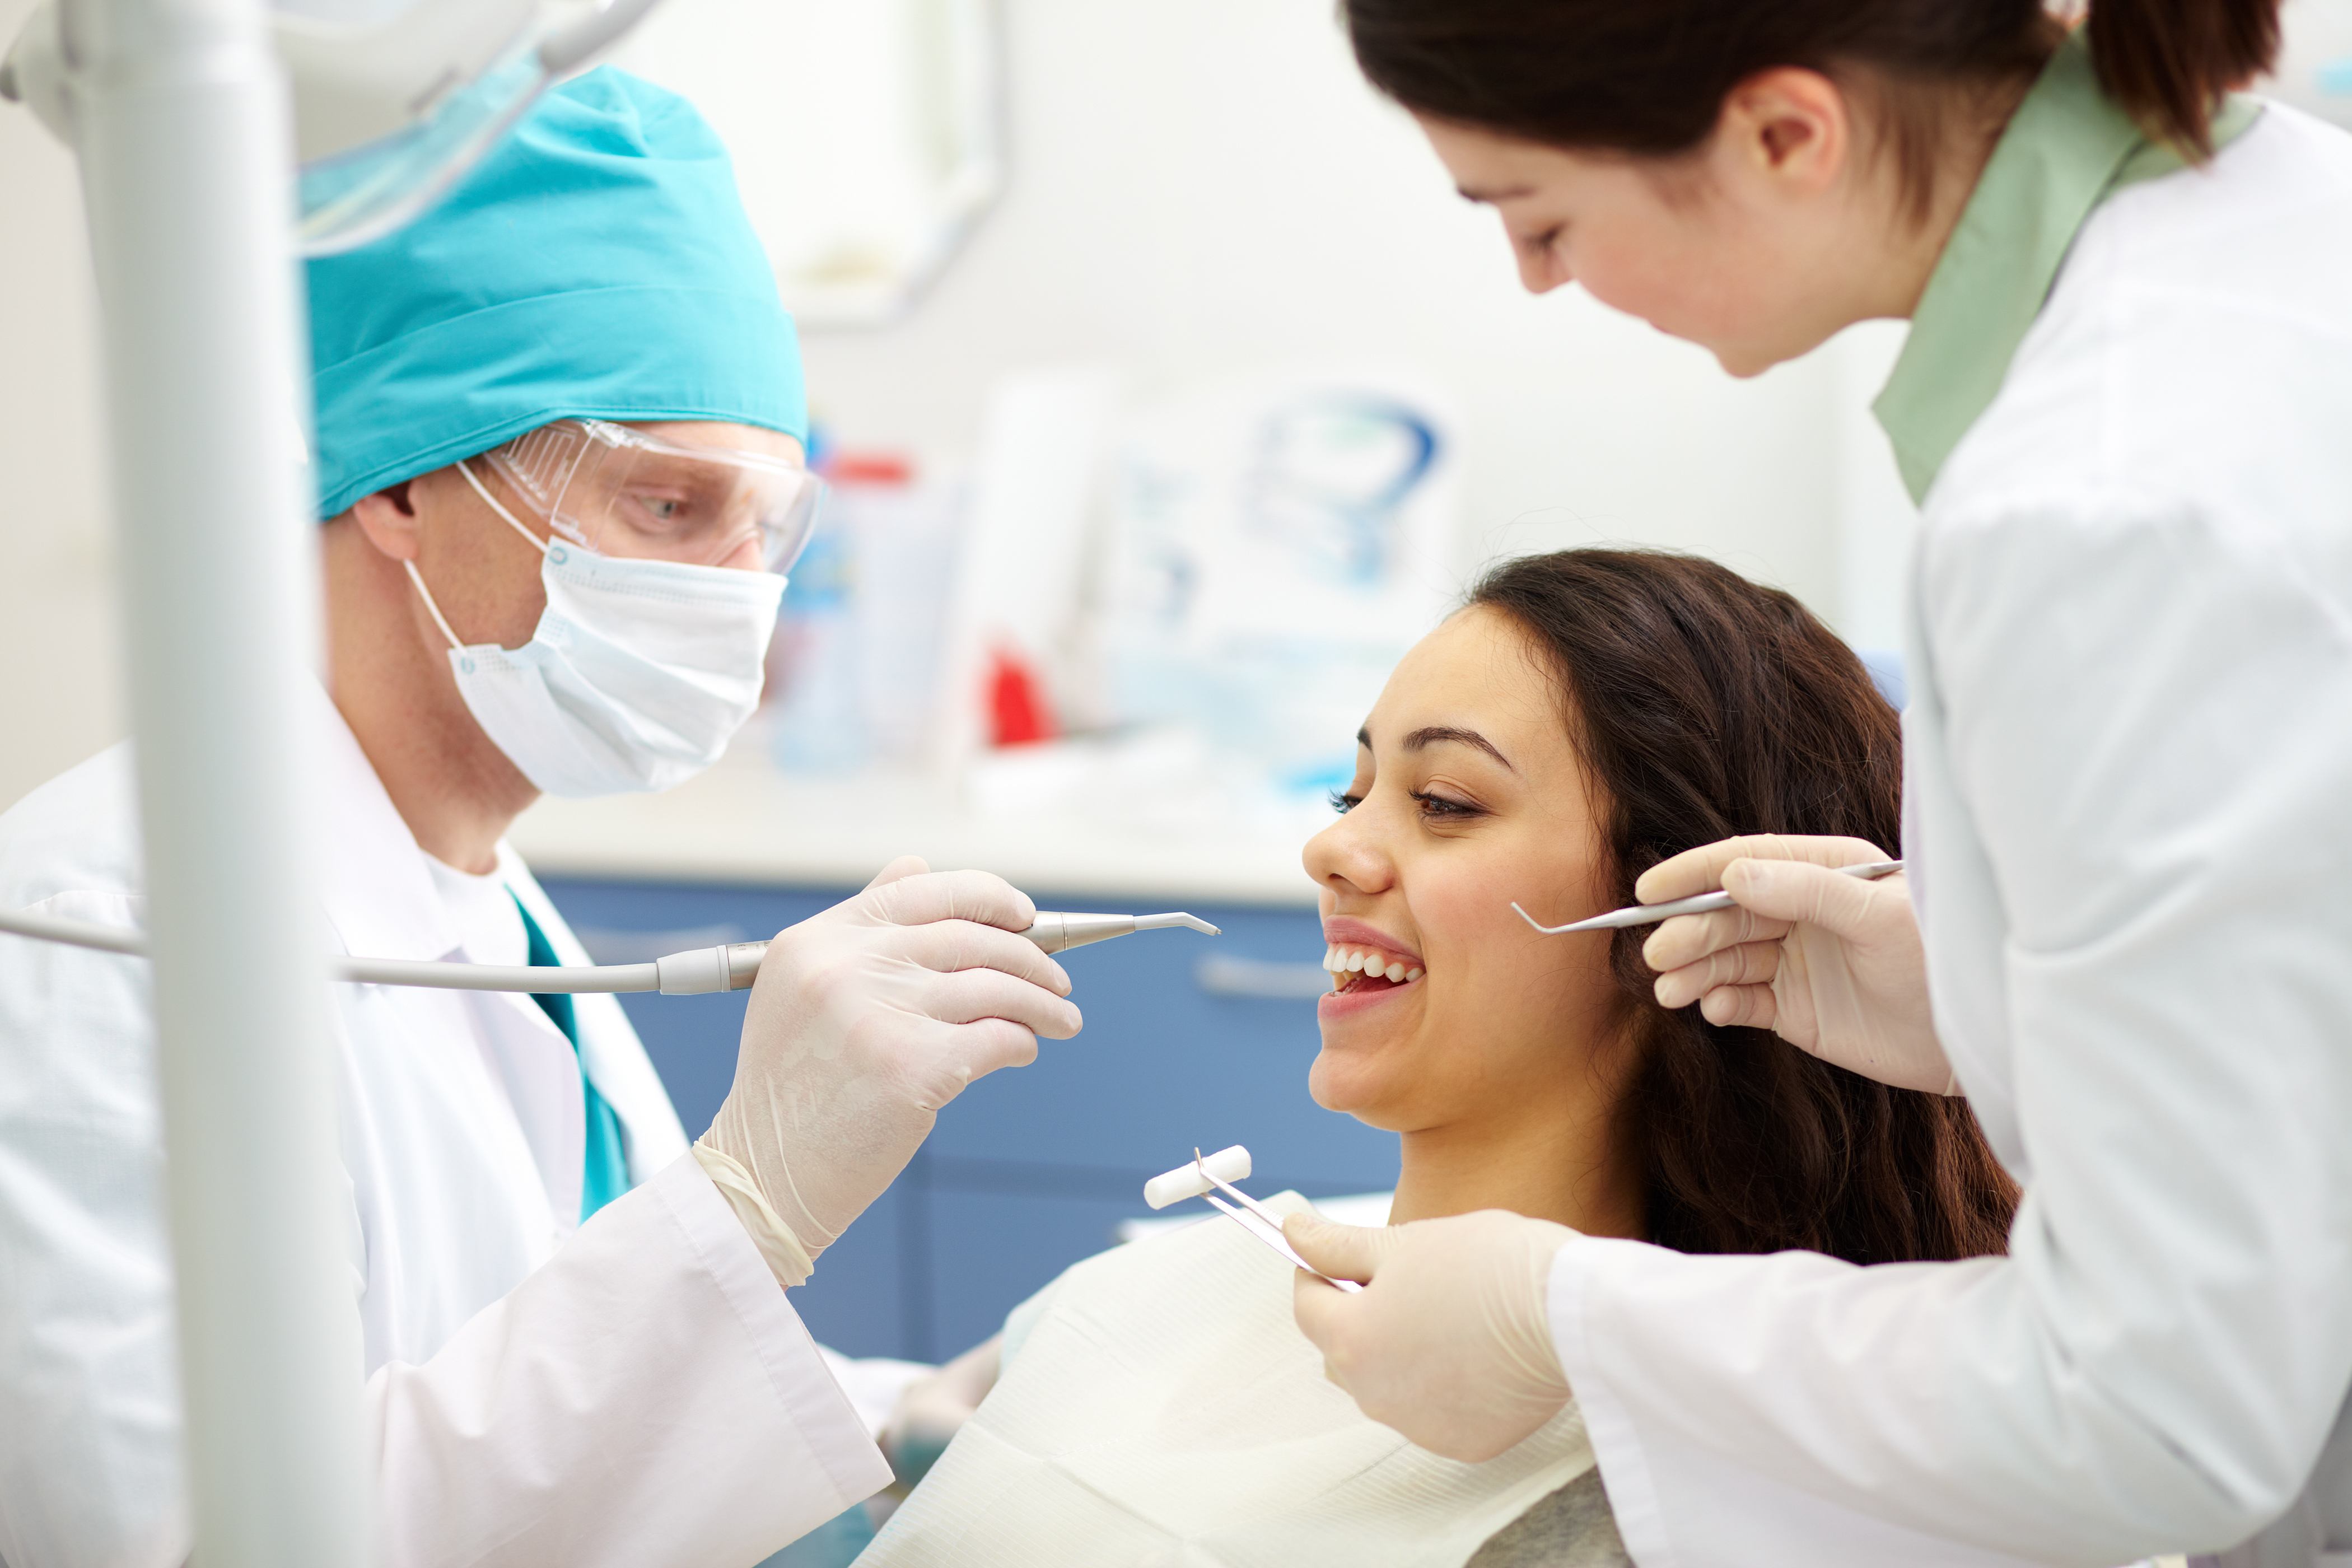 169-dentist-examining-patient-s-teeth.jpg